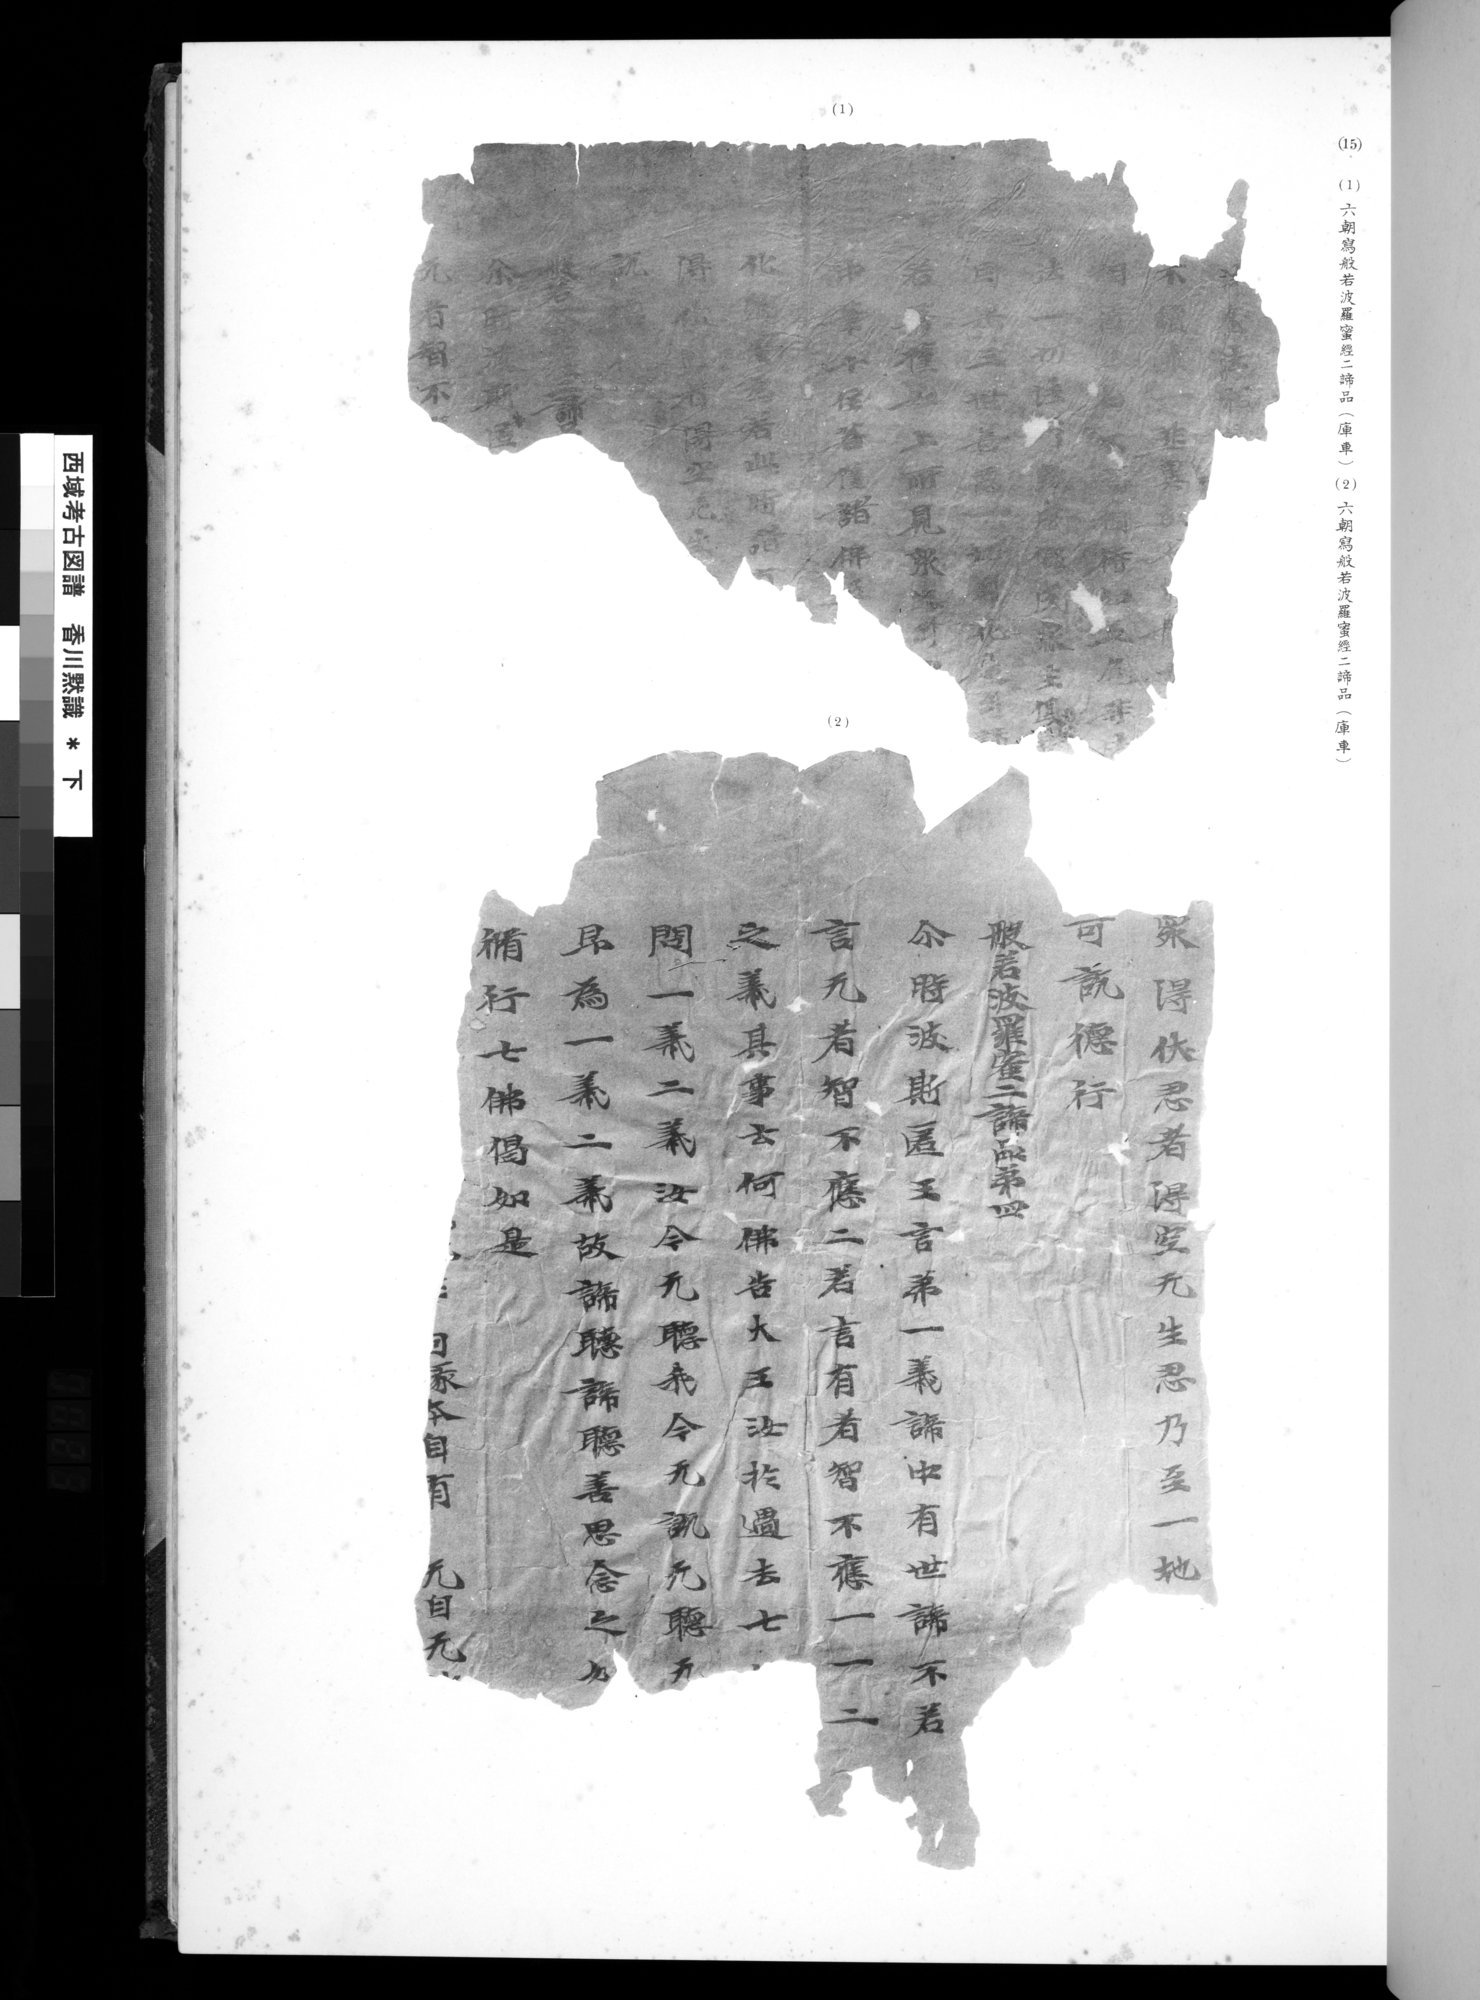 西域考古図譜 : vol.2 / Page 45 (Grayscale High Resolution Image)